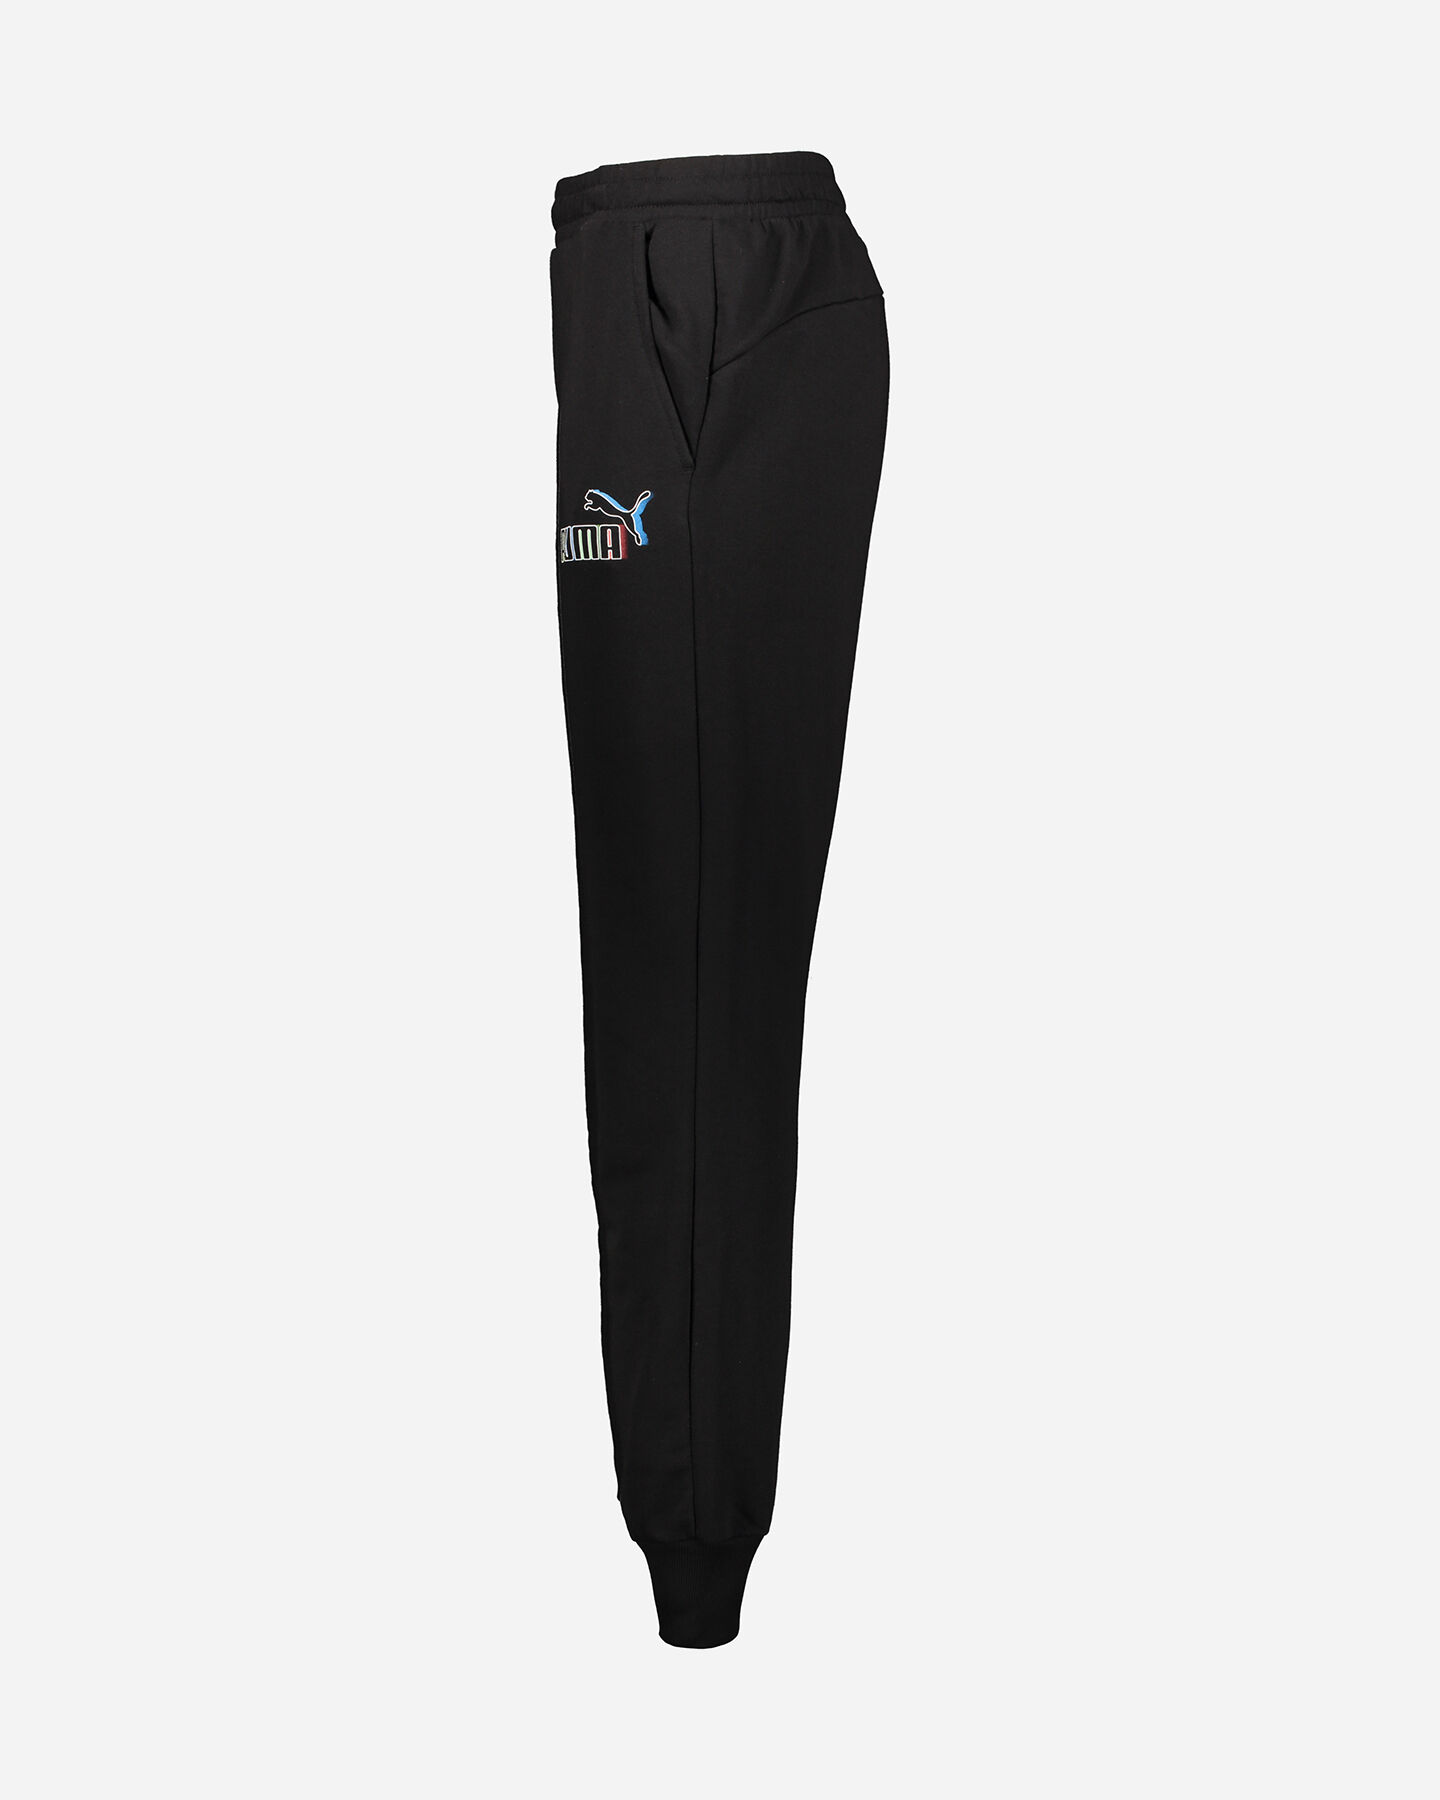  Pantalone PUMA CORE BLANK BASE CLOSED M S5339790|01|XS scatto 1